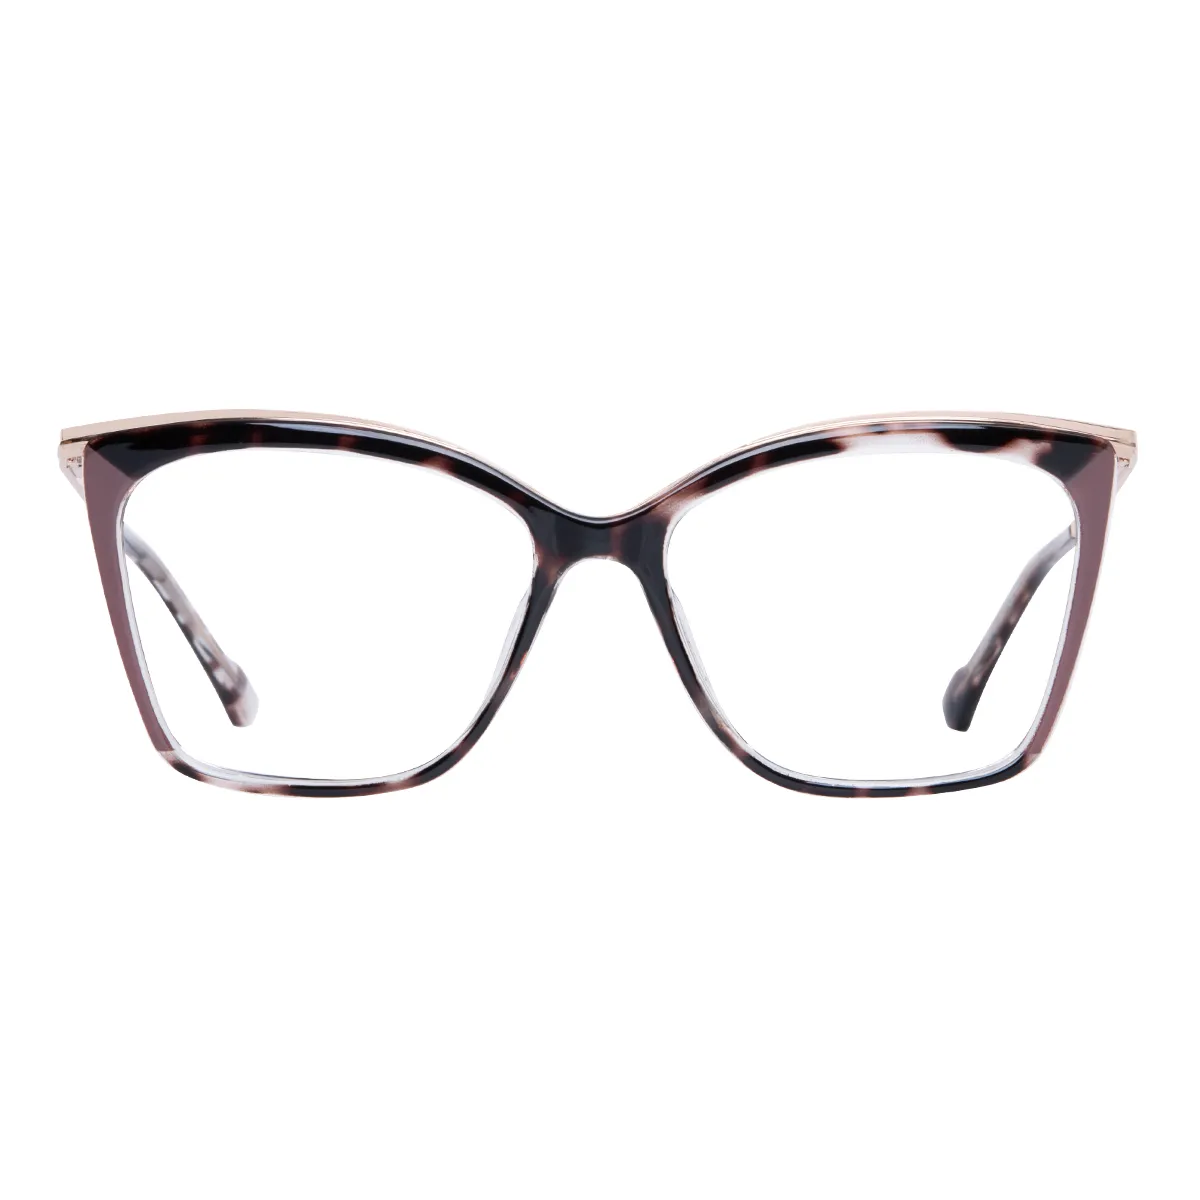 Saffron - Square Tortoiseshell-Brown Glasses for Women